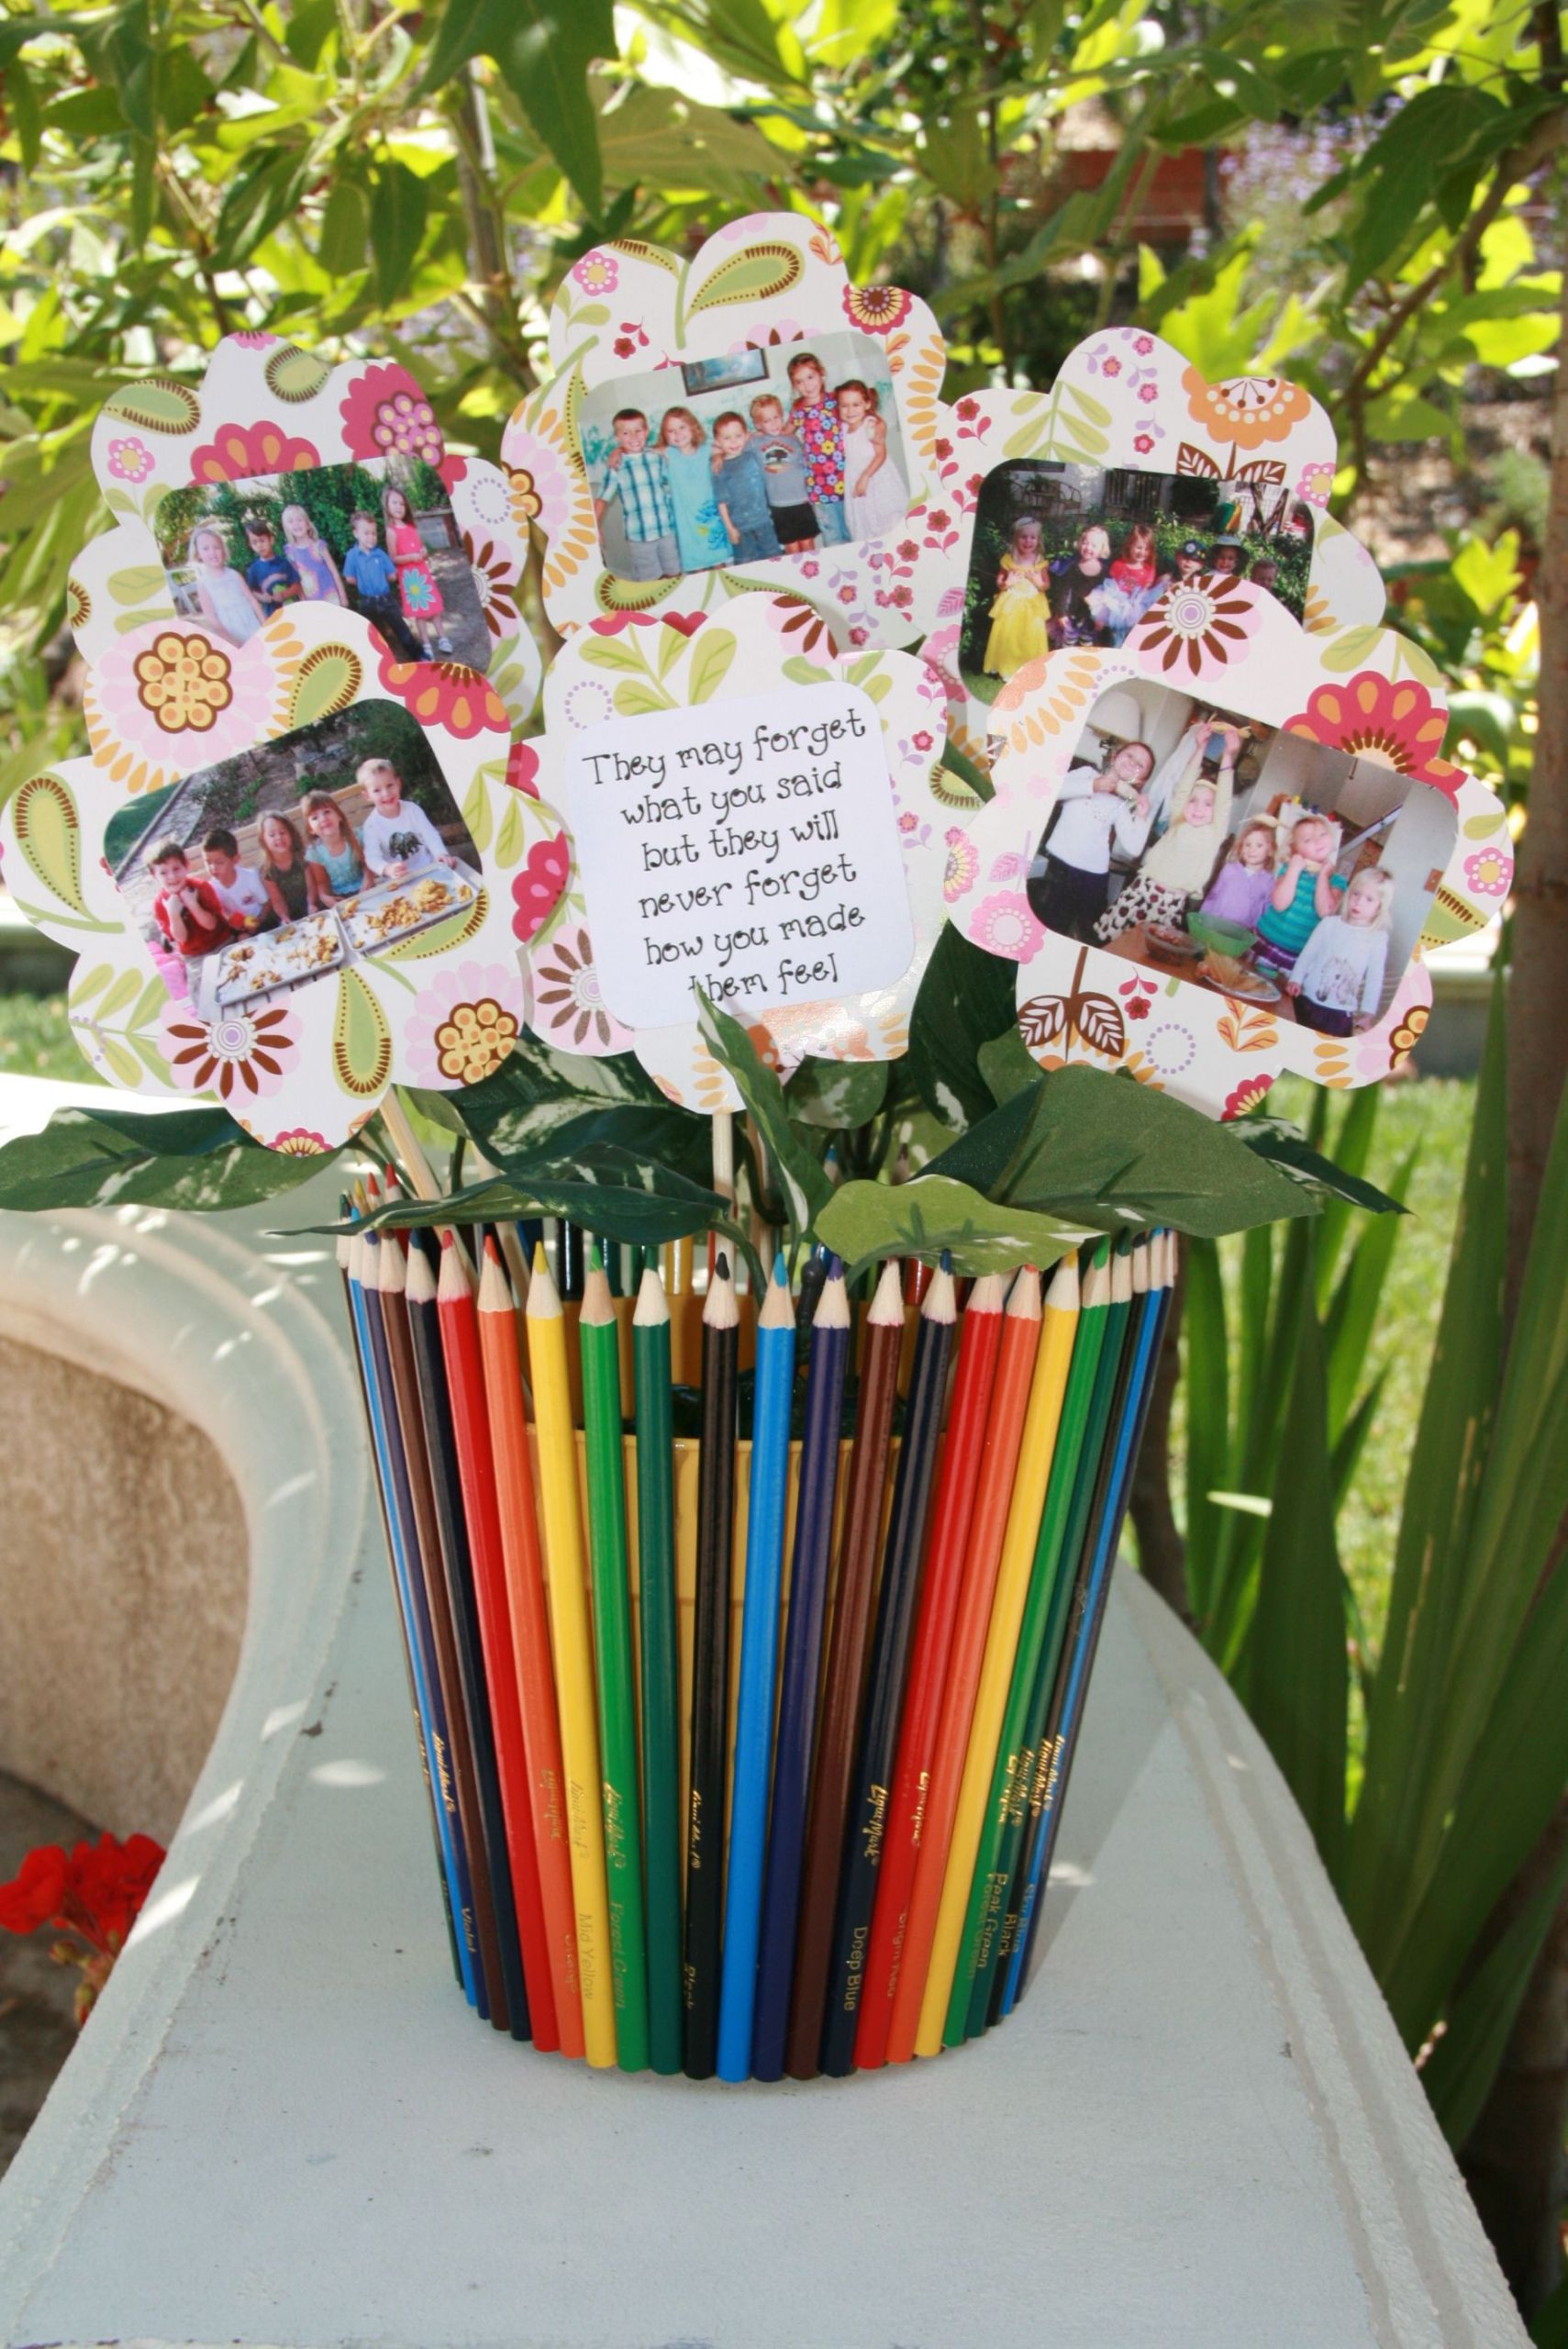 Preschool Graduation Gift Ideas From Teacher
 Thank you t for my kids preschool teacher with class